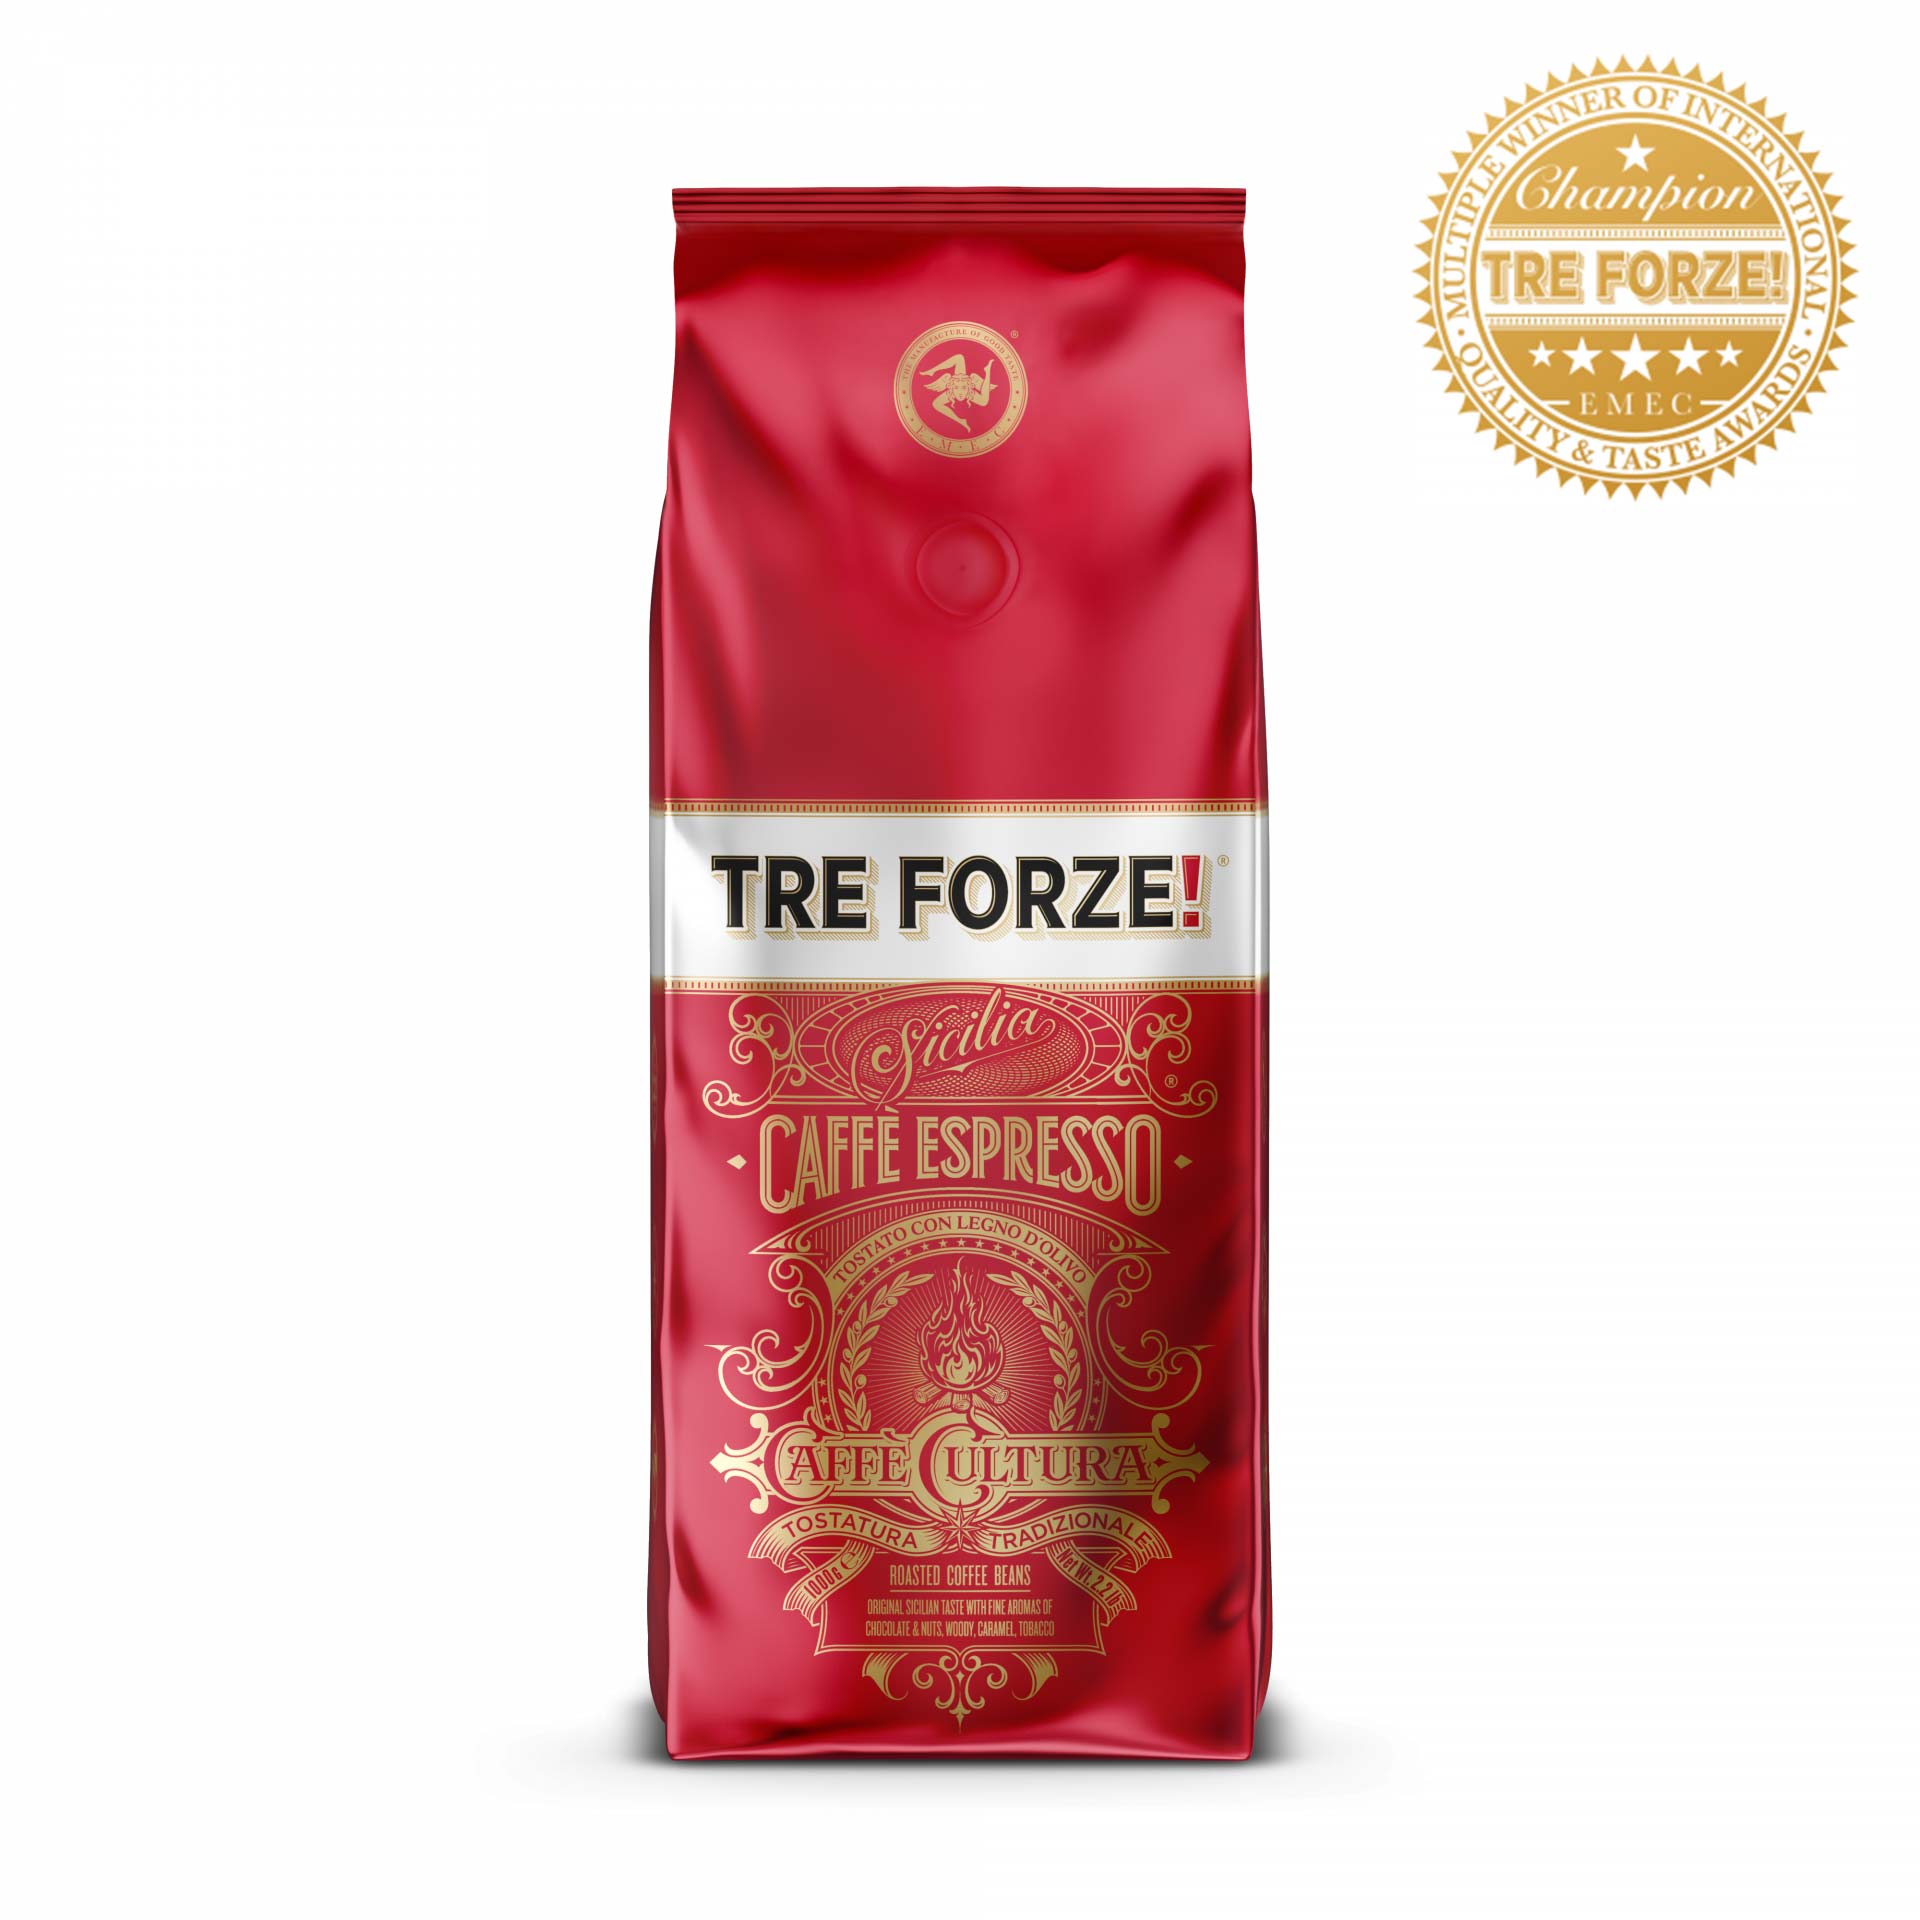 TRE FORZE! - Caffè Espresso - 1000g - Beans